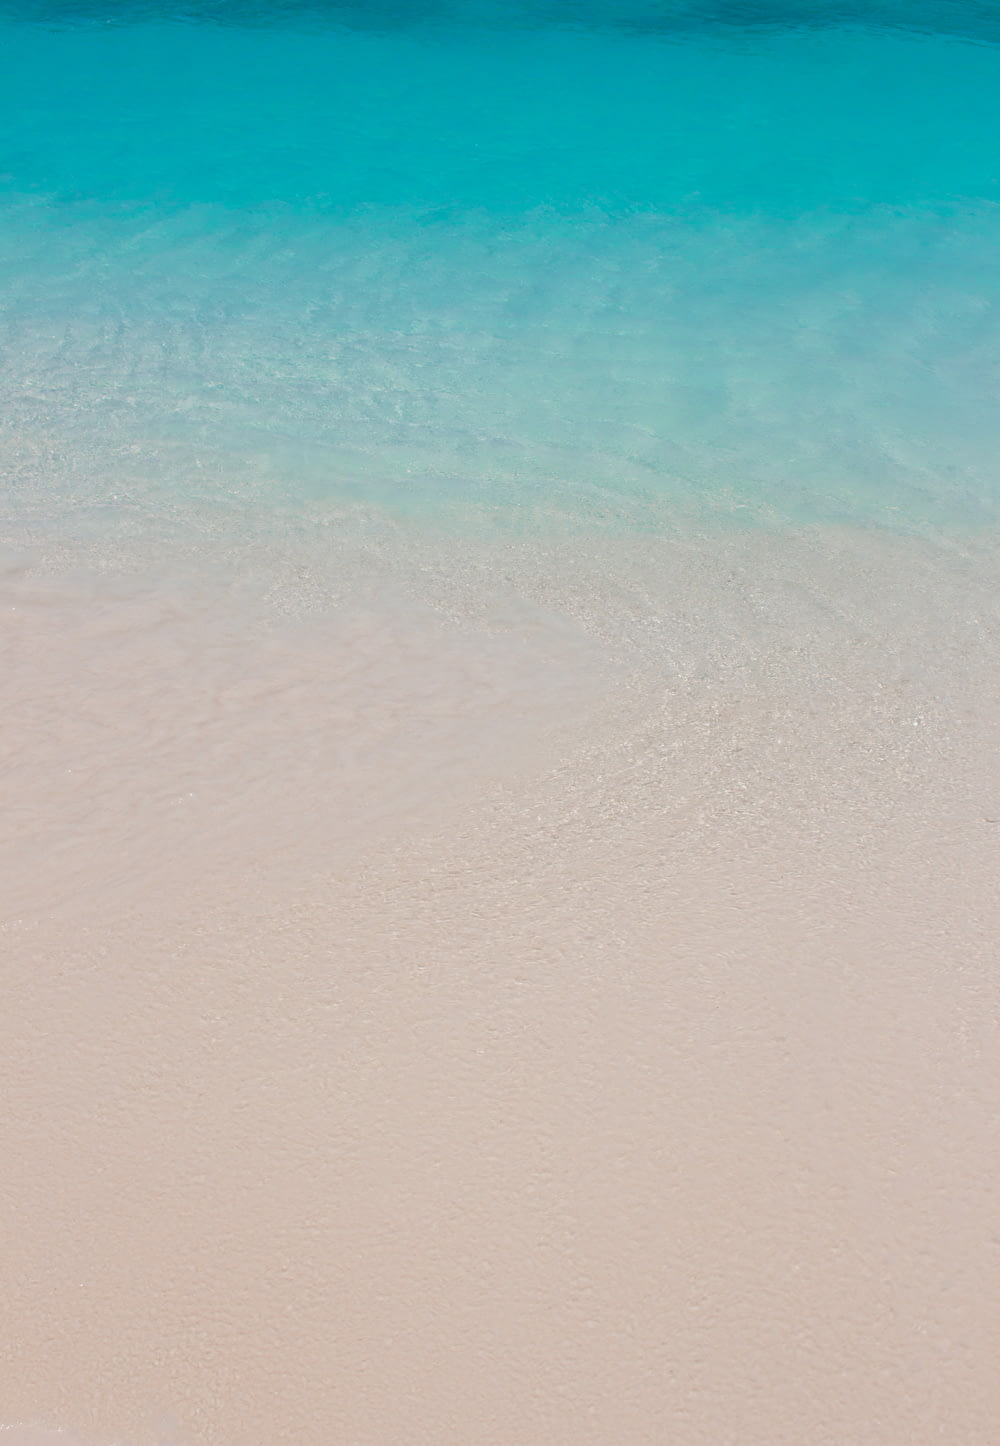 plage de sable blanc avec mer bleue